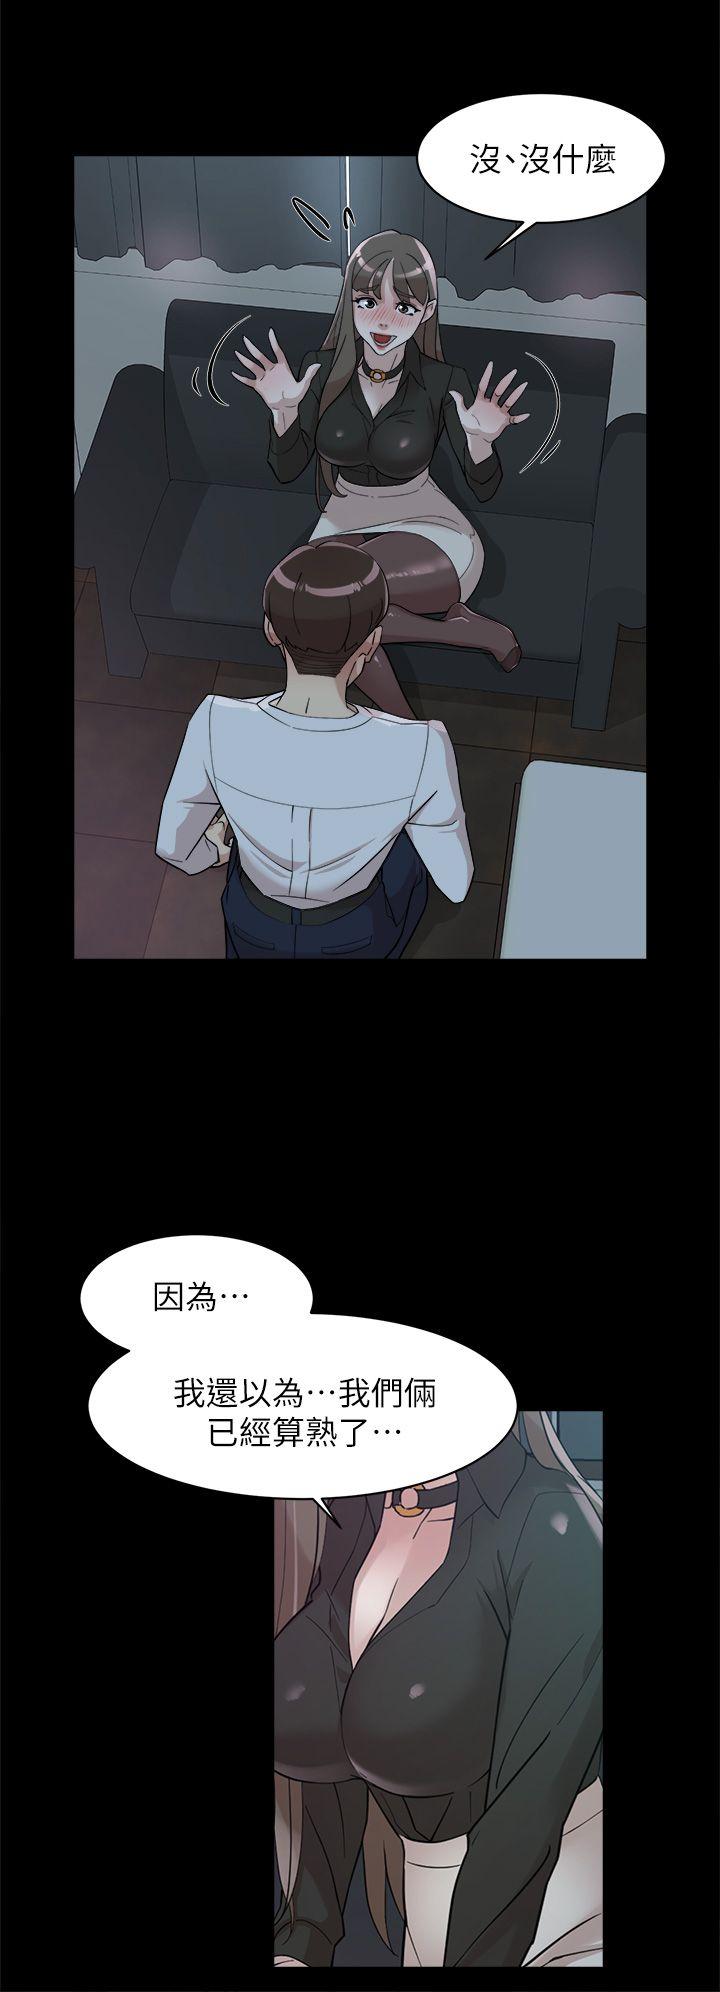 韩国污漫画 她的高跟鞋(無刪減) 第66话-你能负责吗? 20